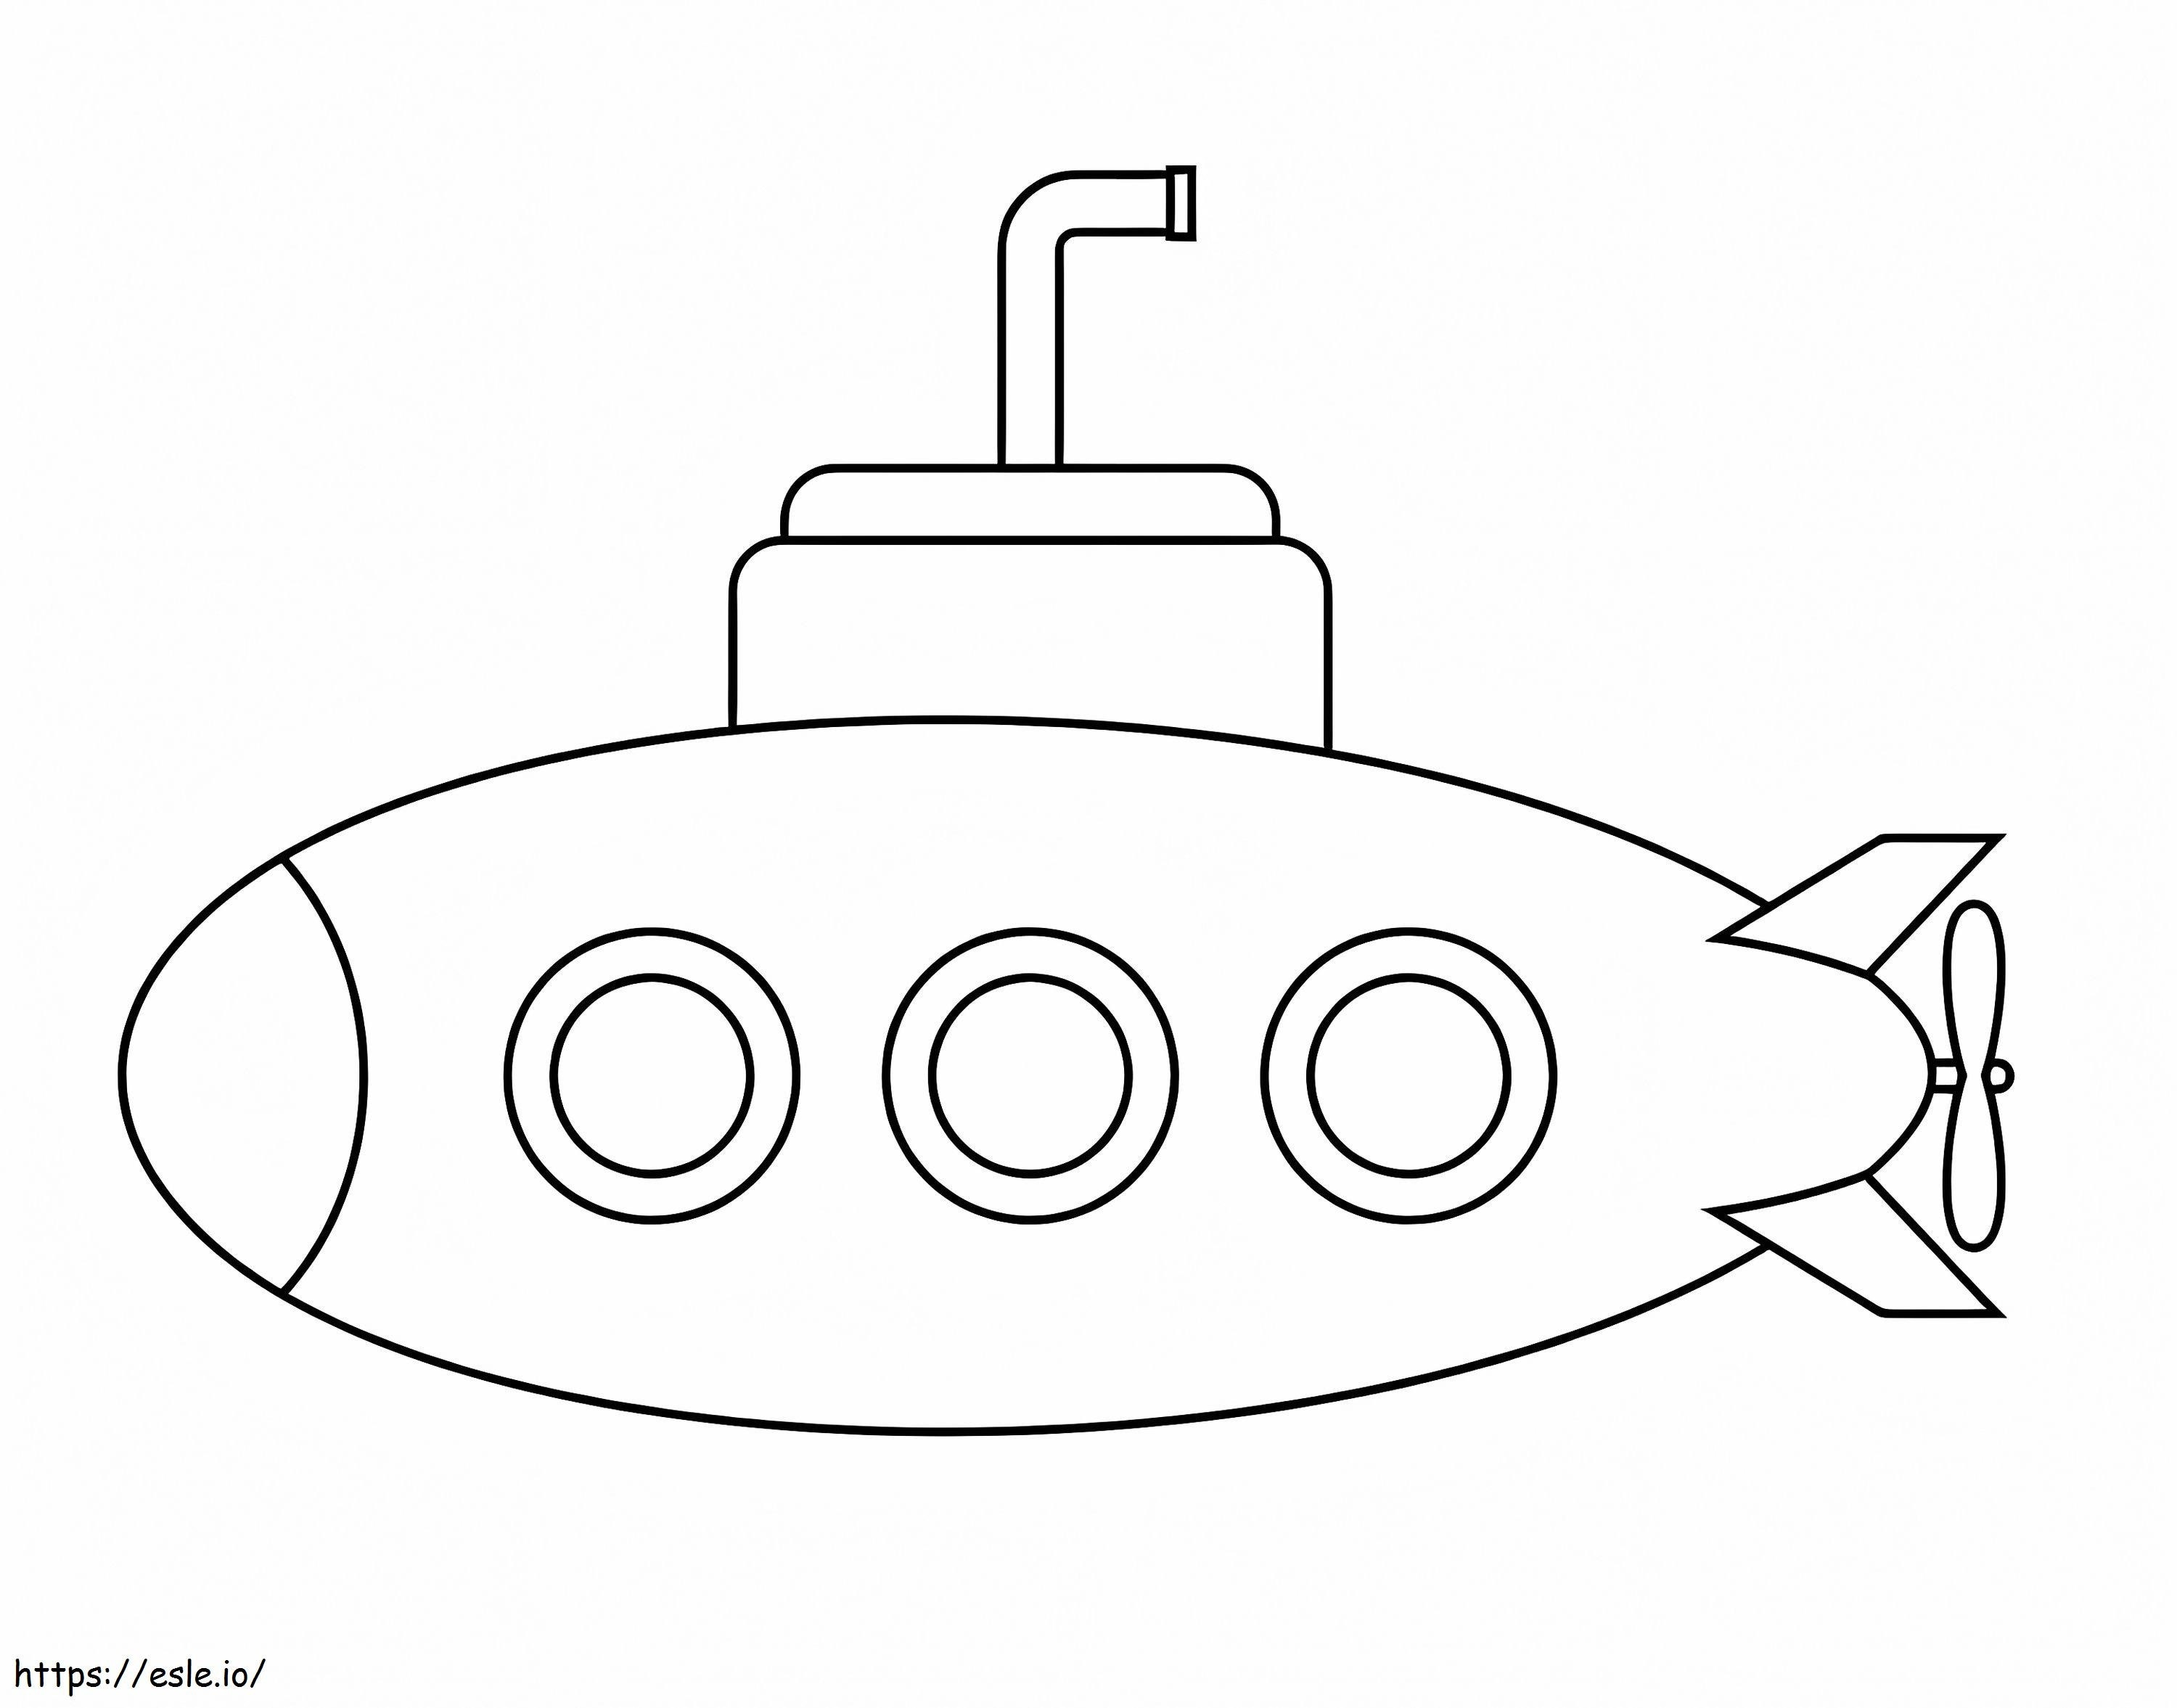 Einfaches U-Boot ausmalbilder